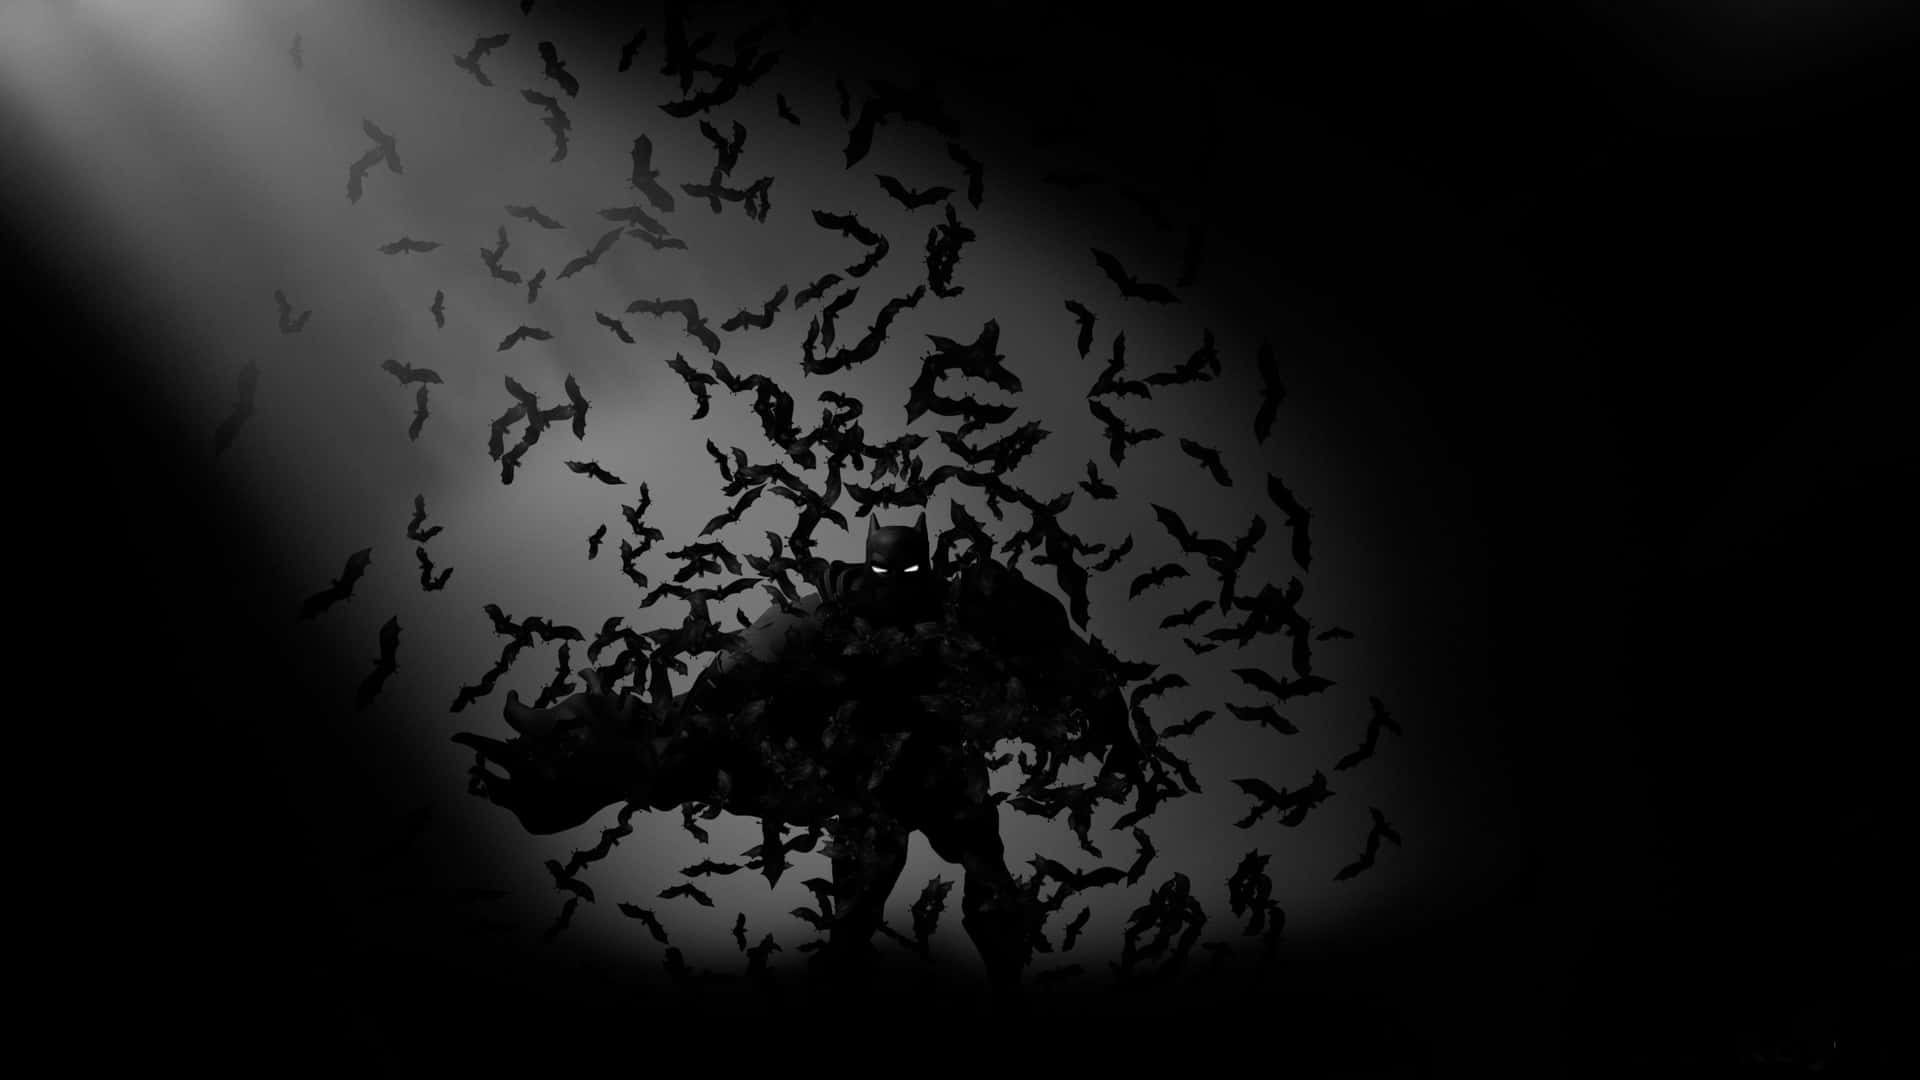 Dielegendäre Batcave Von Gotham. Wallpaper